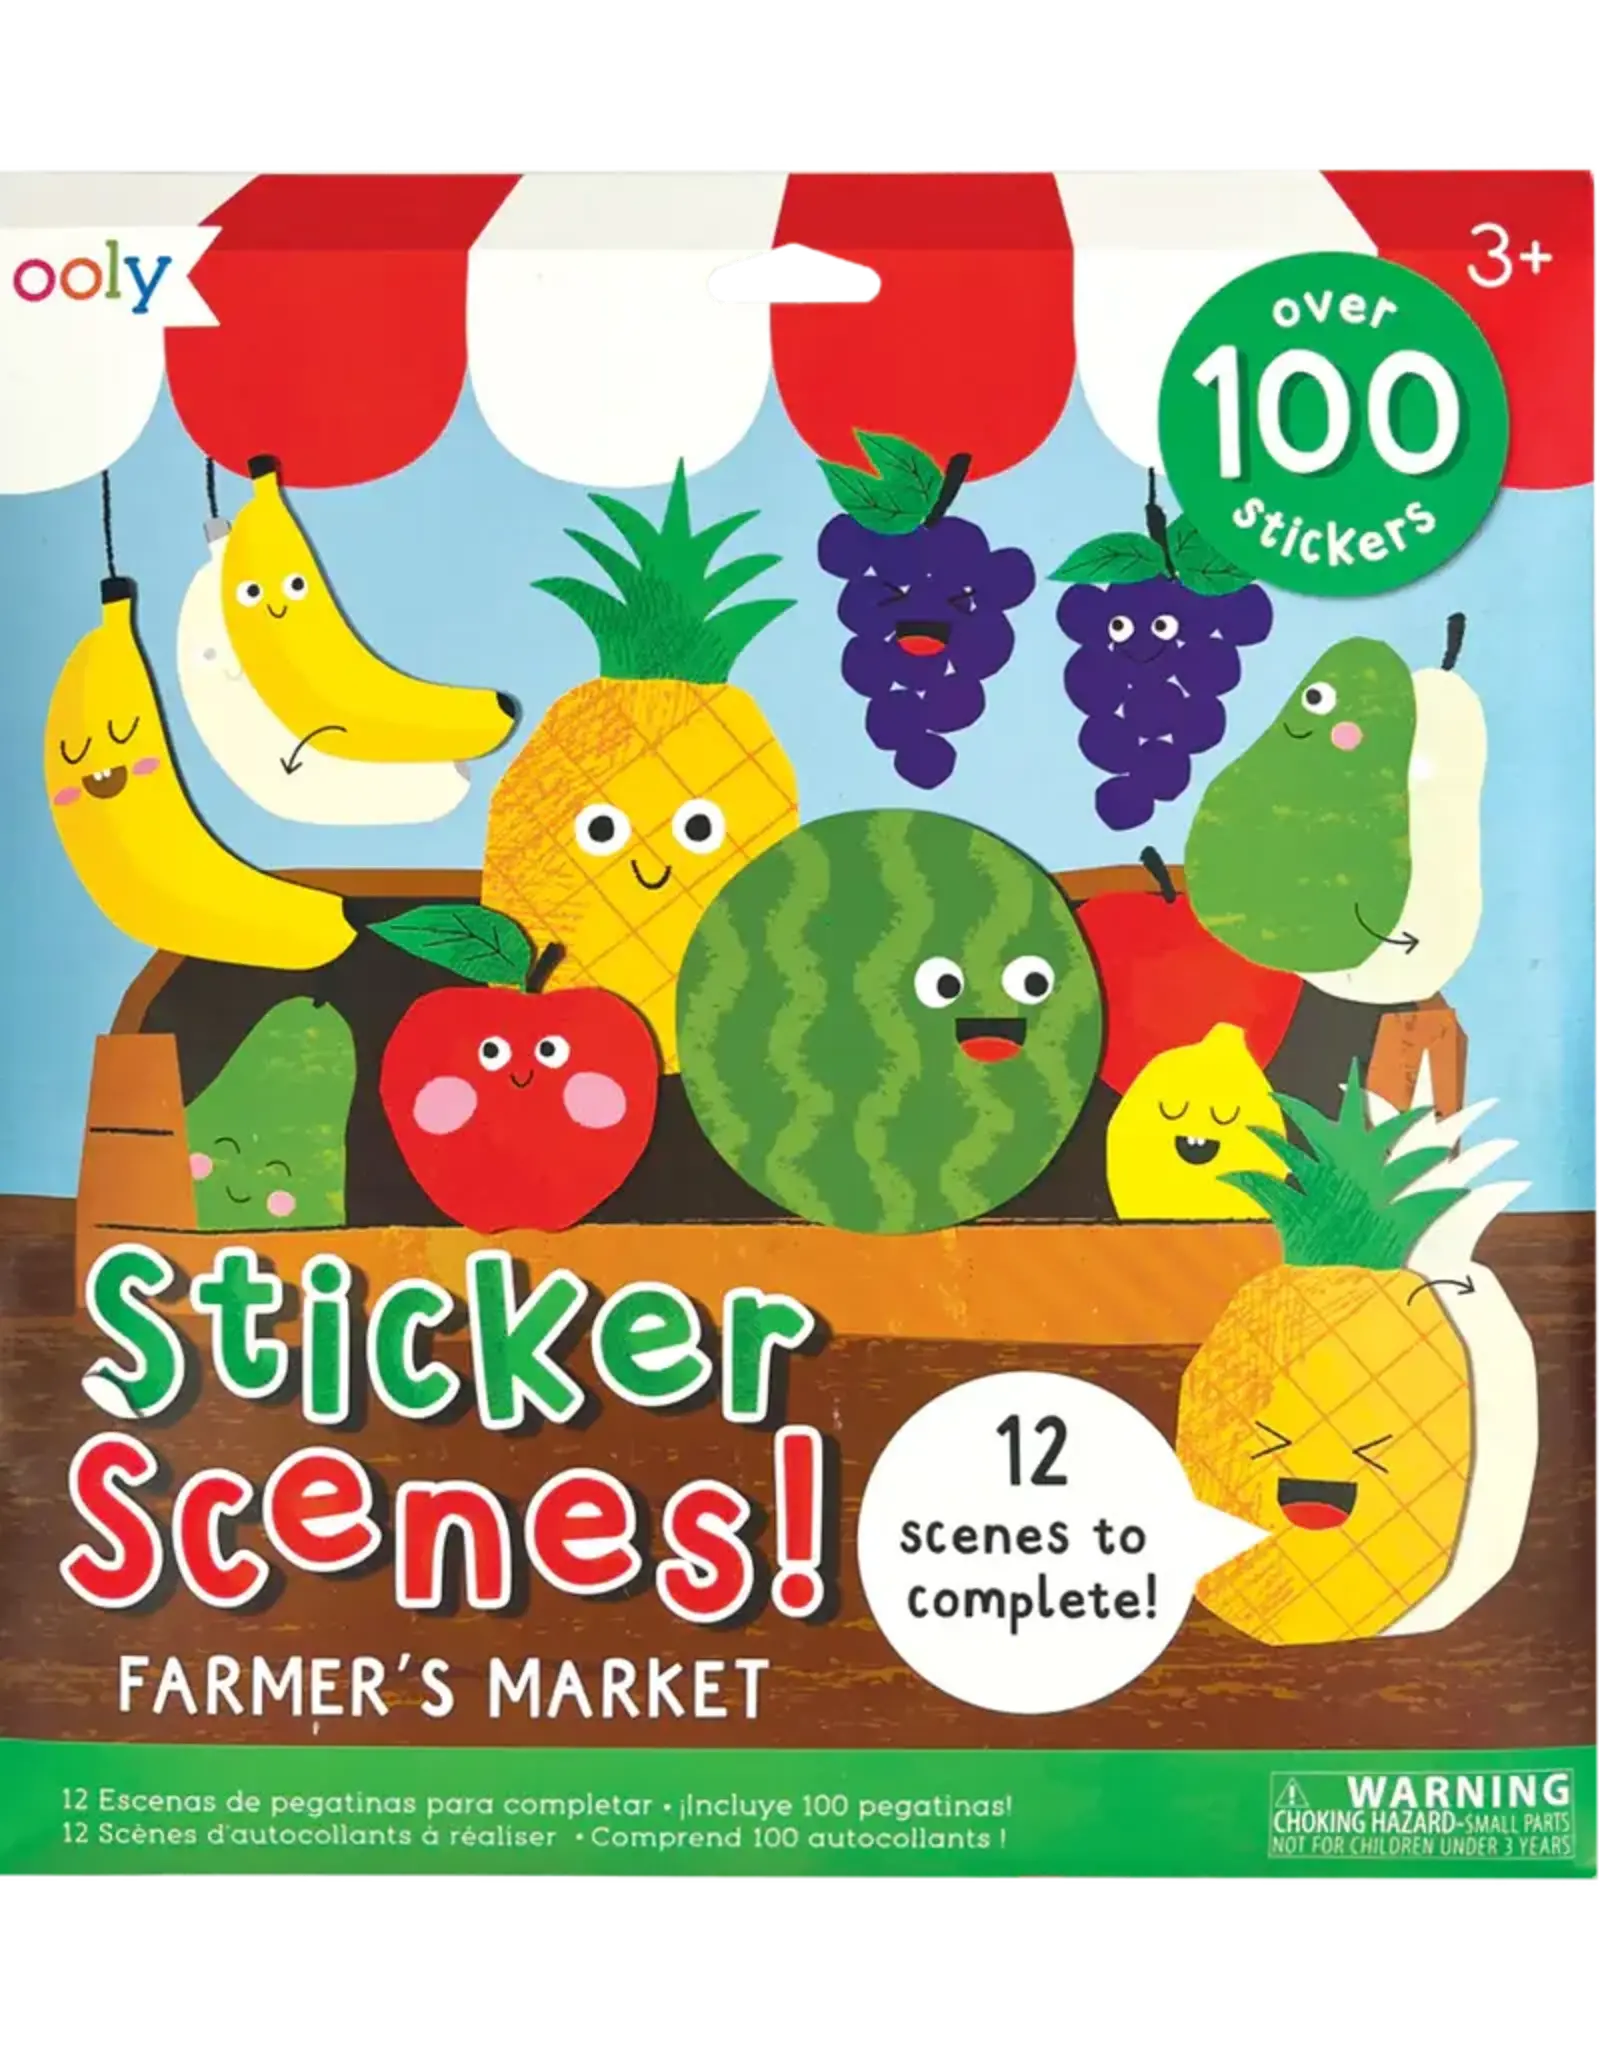 OOLY STICKER SCENES! - FARMER'S MARKET